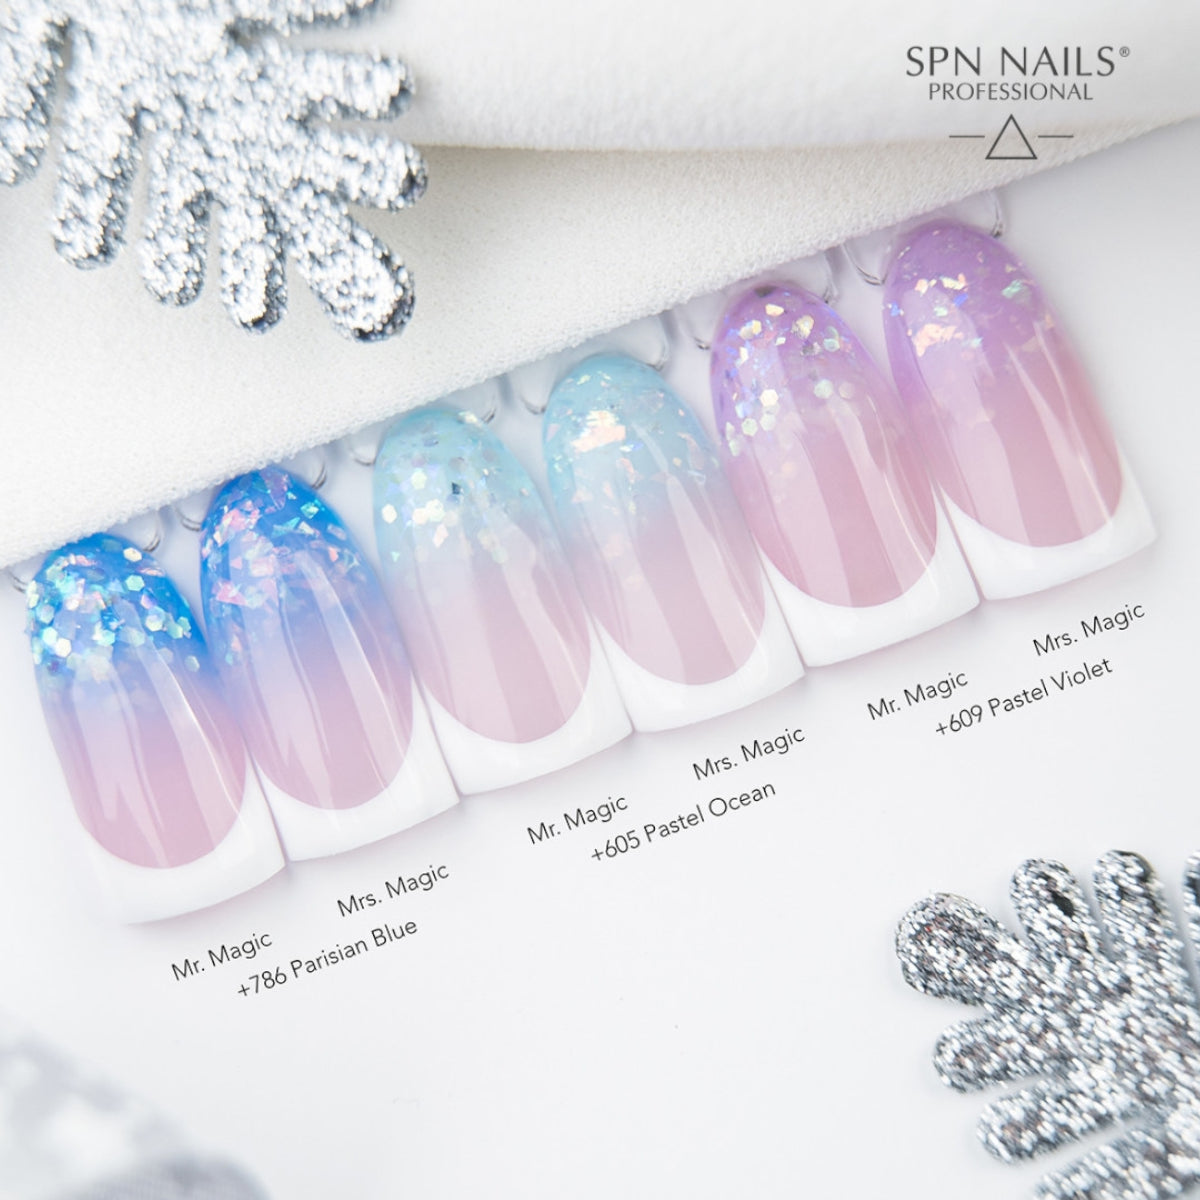 SPN Nails Acryl-O!-Gel Acrylic Gel Mrs. Magic Styling